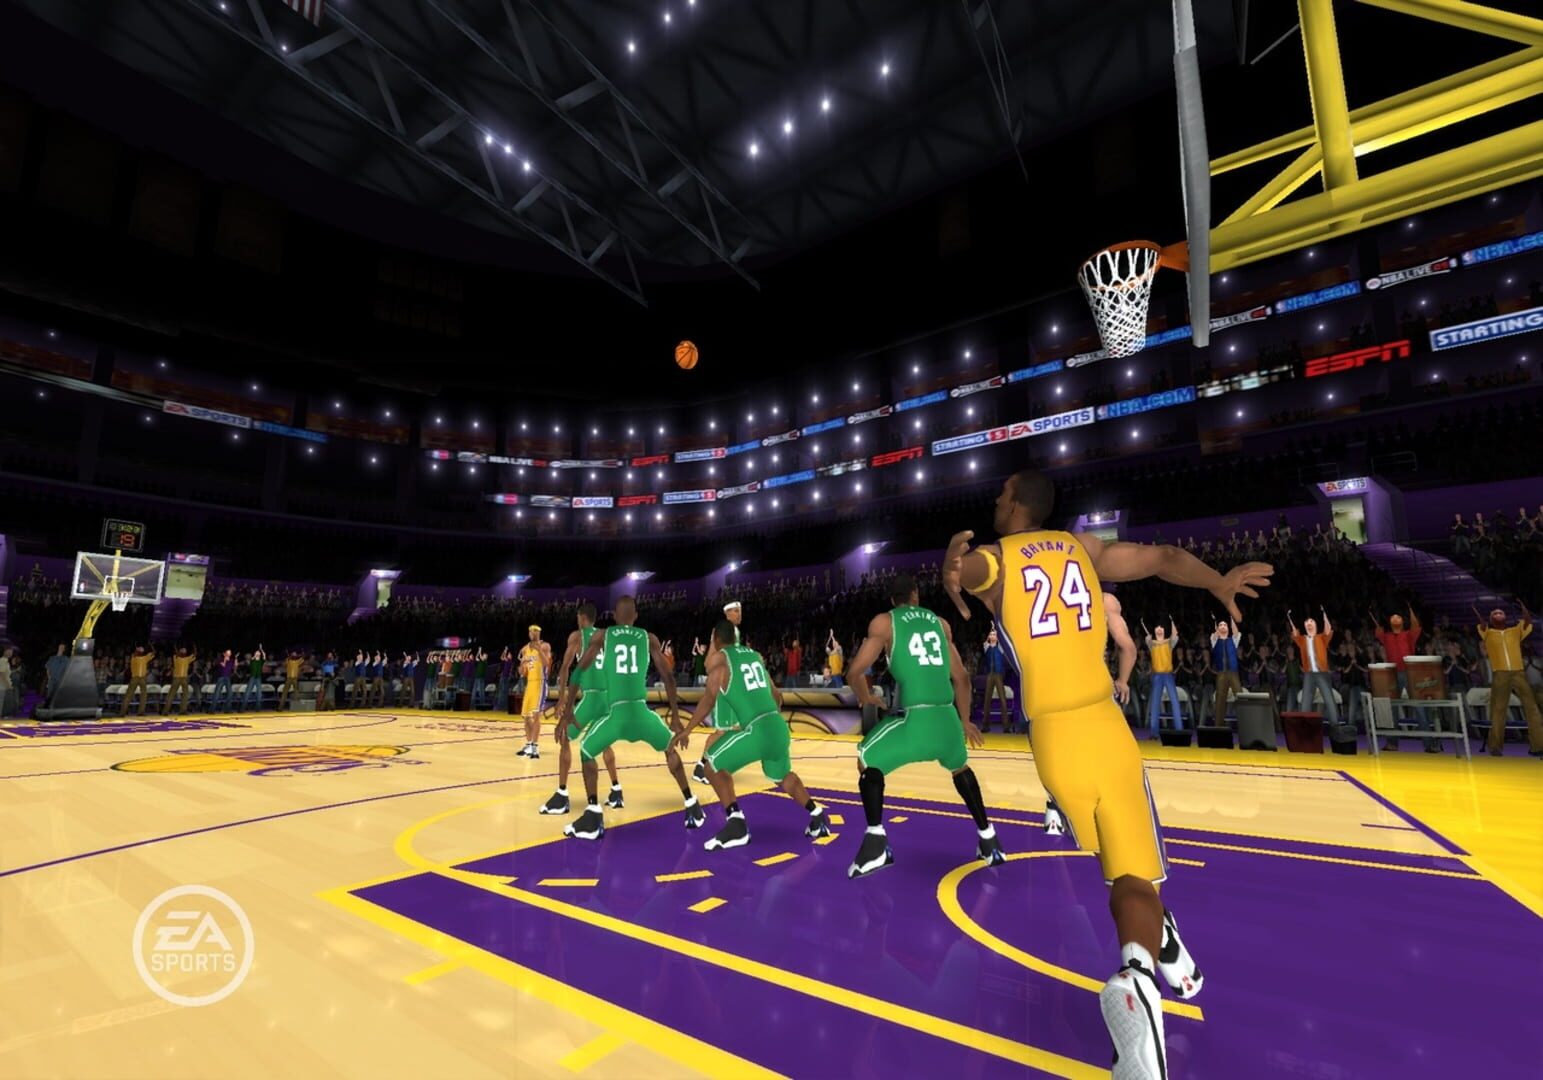 Captura de pantalla - NBA Live 09 All-Play